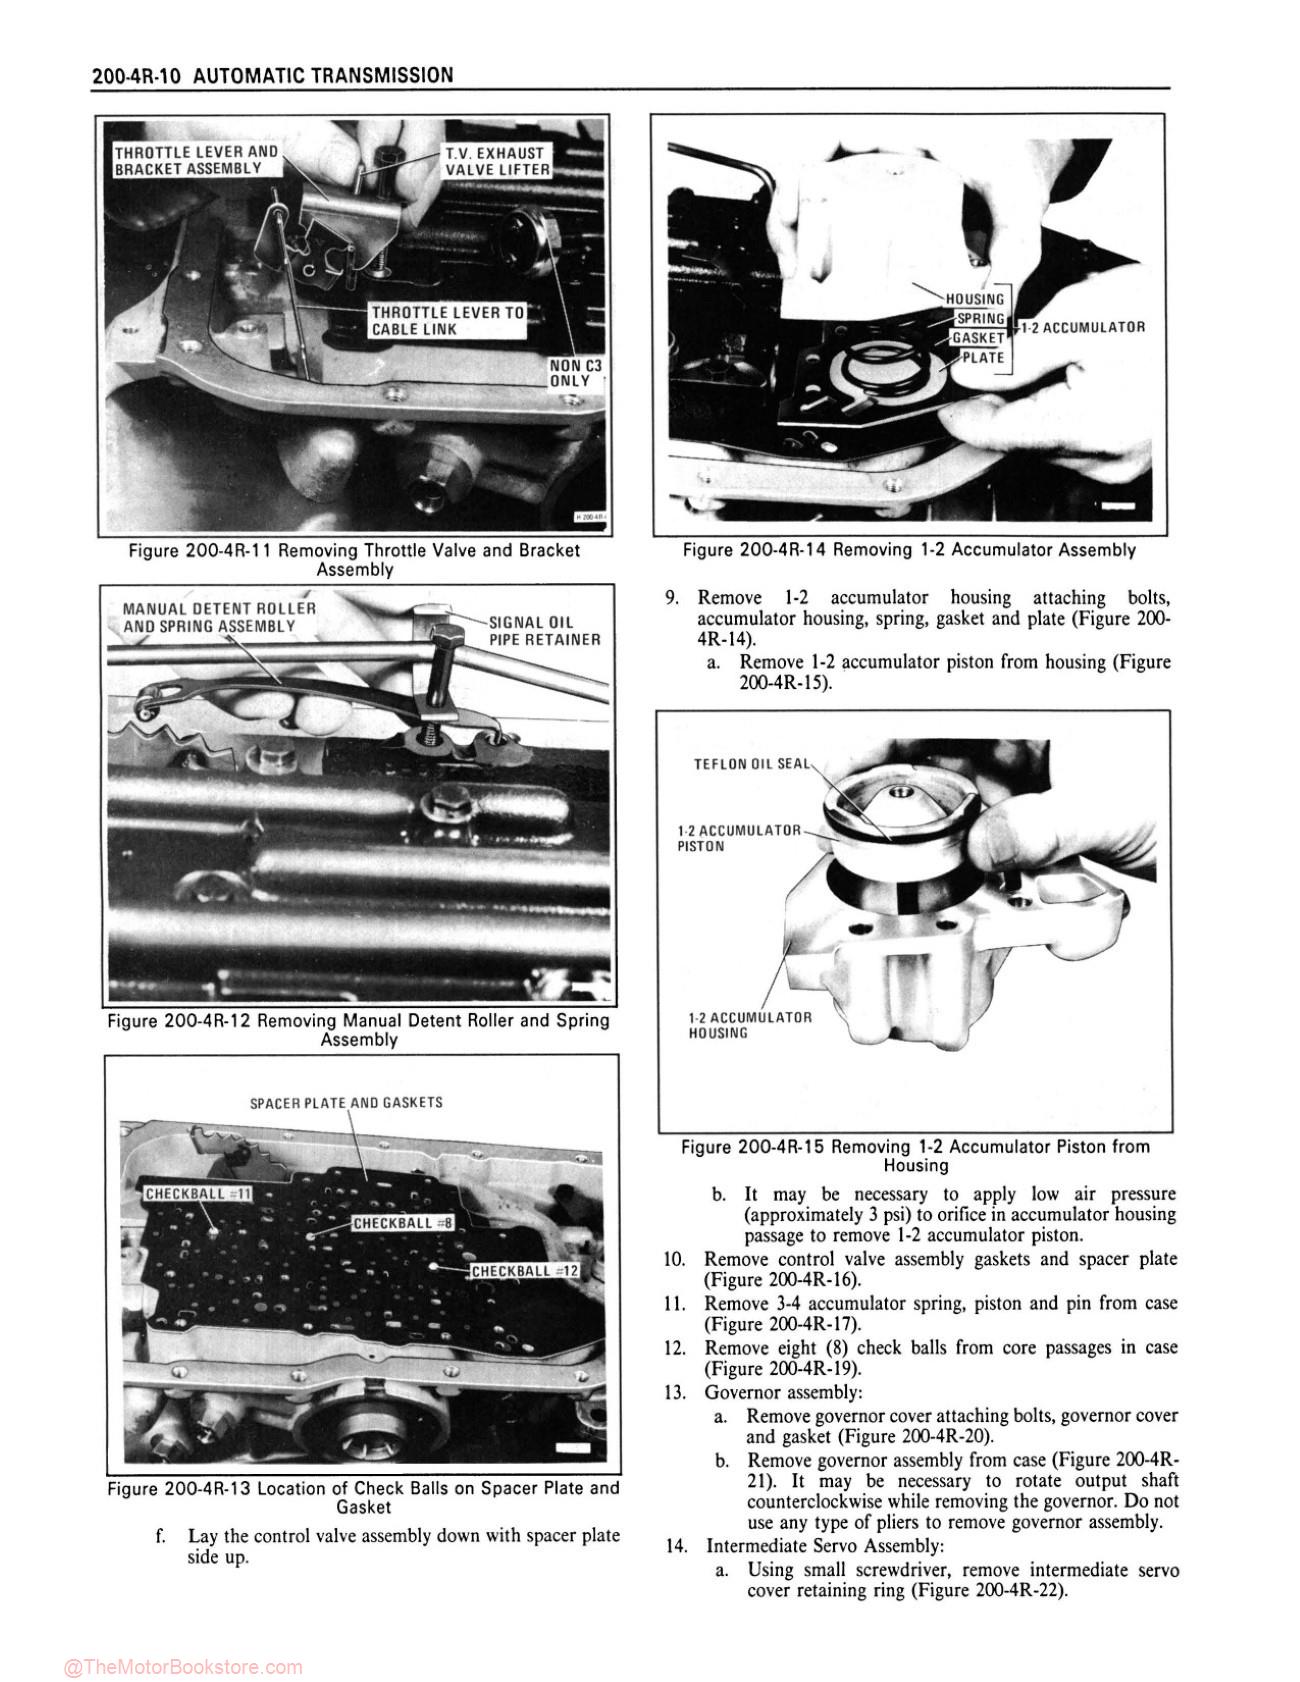 1986 Chevy Monte Carlo, El Camino, Caprice Shop Manual - Sample Page 2